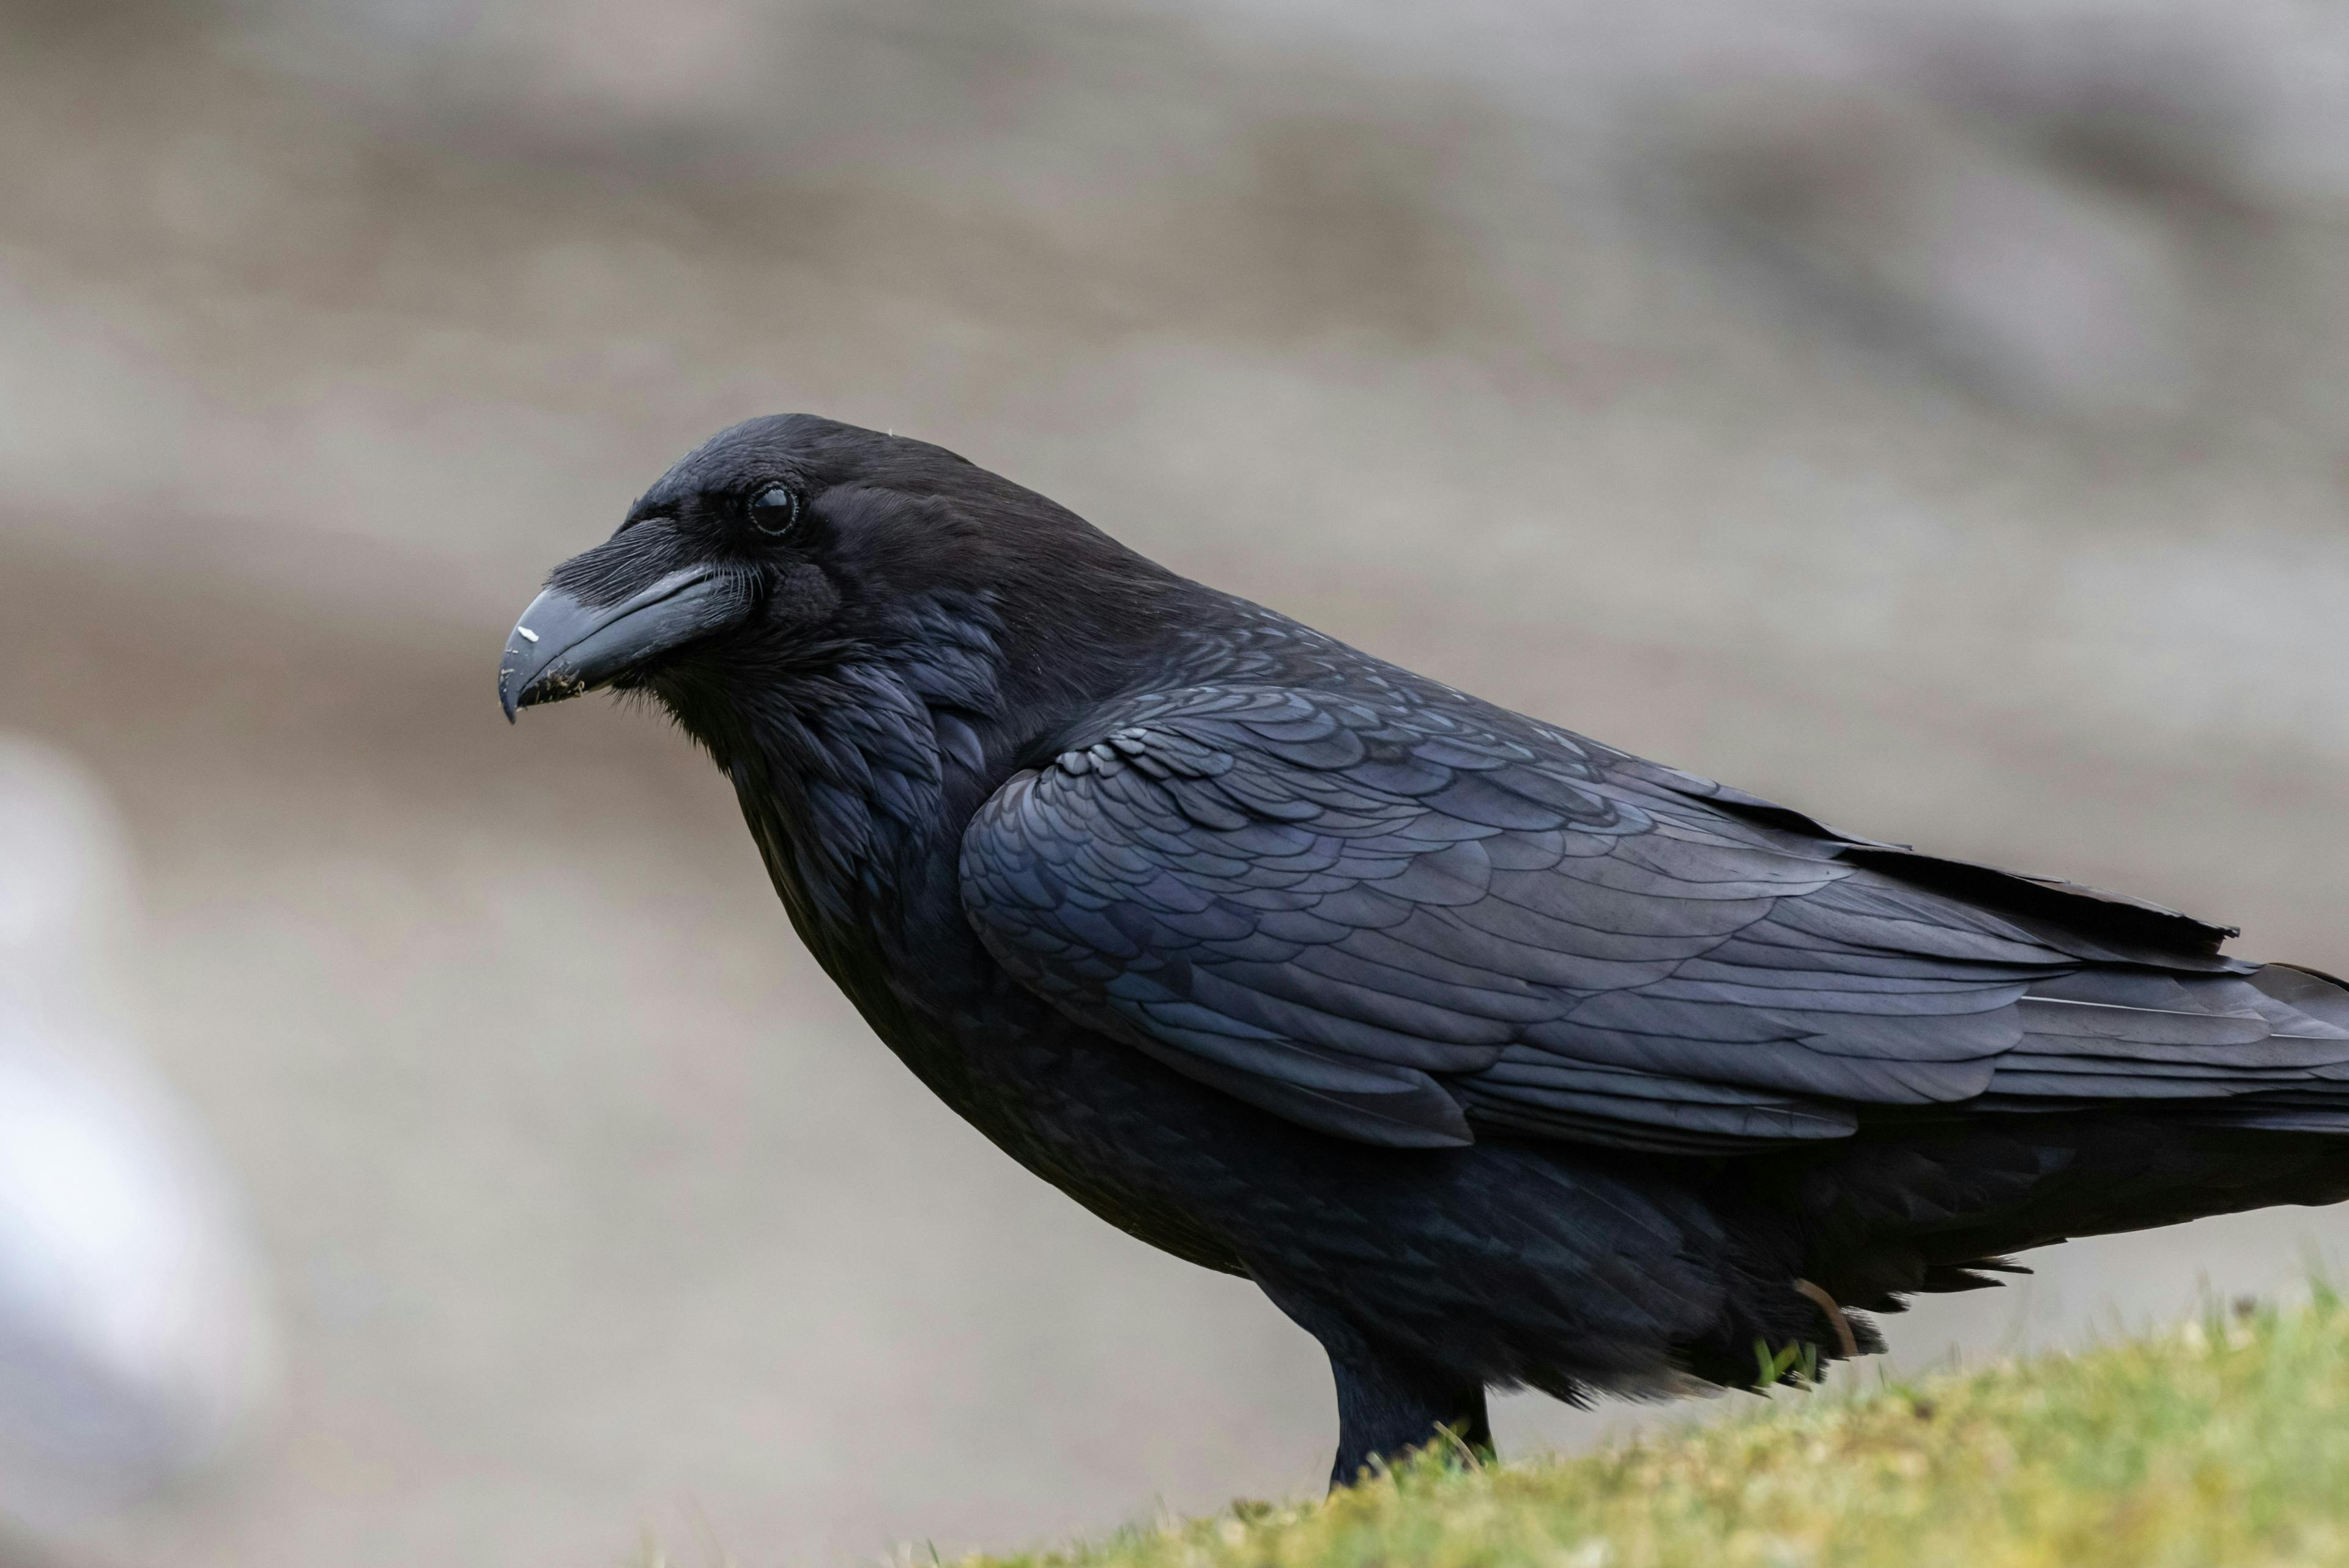 a black bird on grass